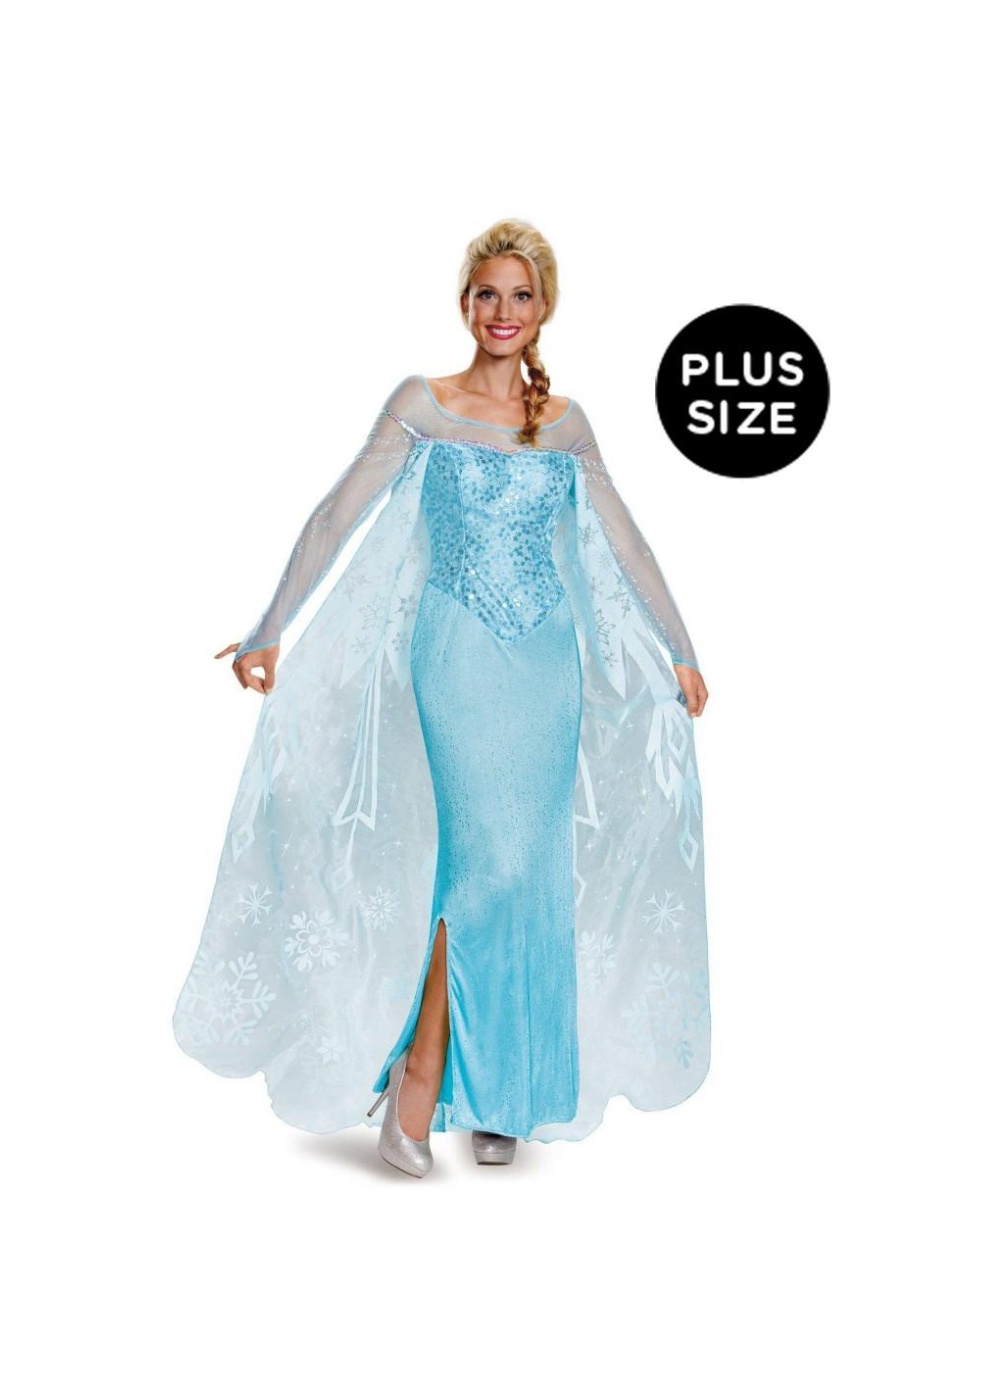  Frozen Elsa plus size Costume